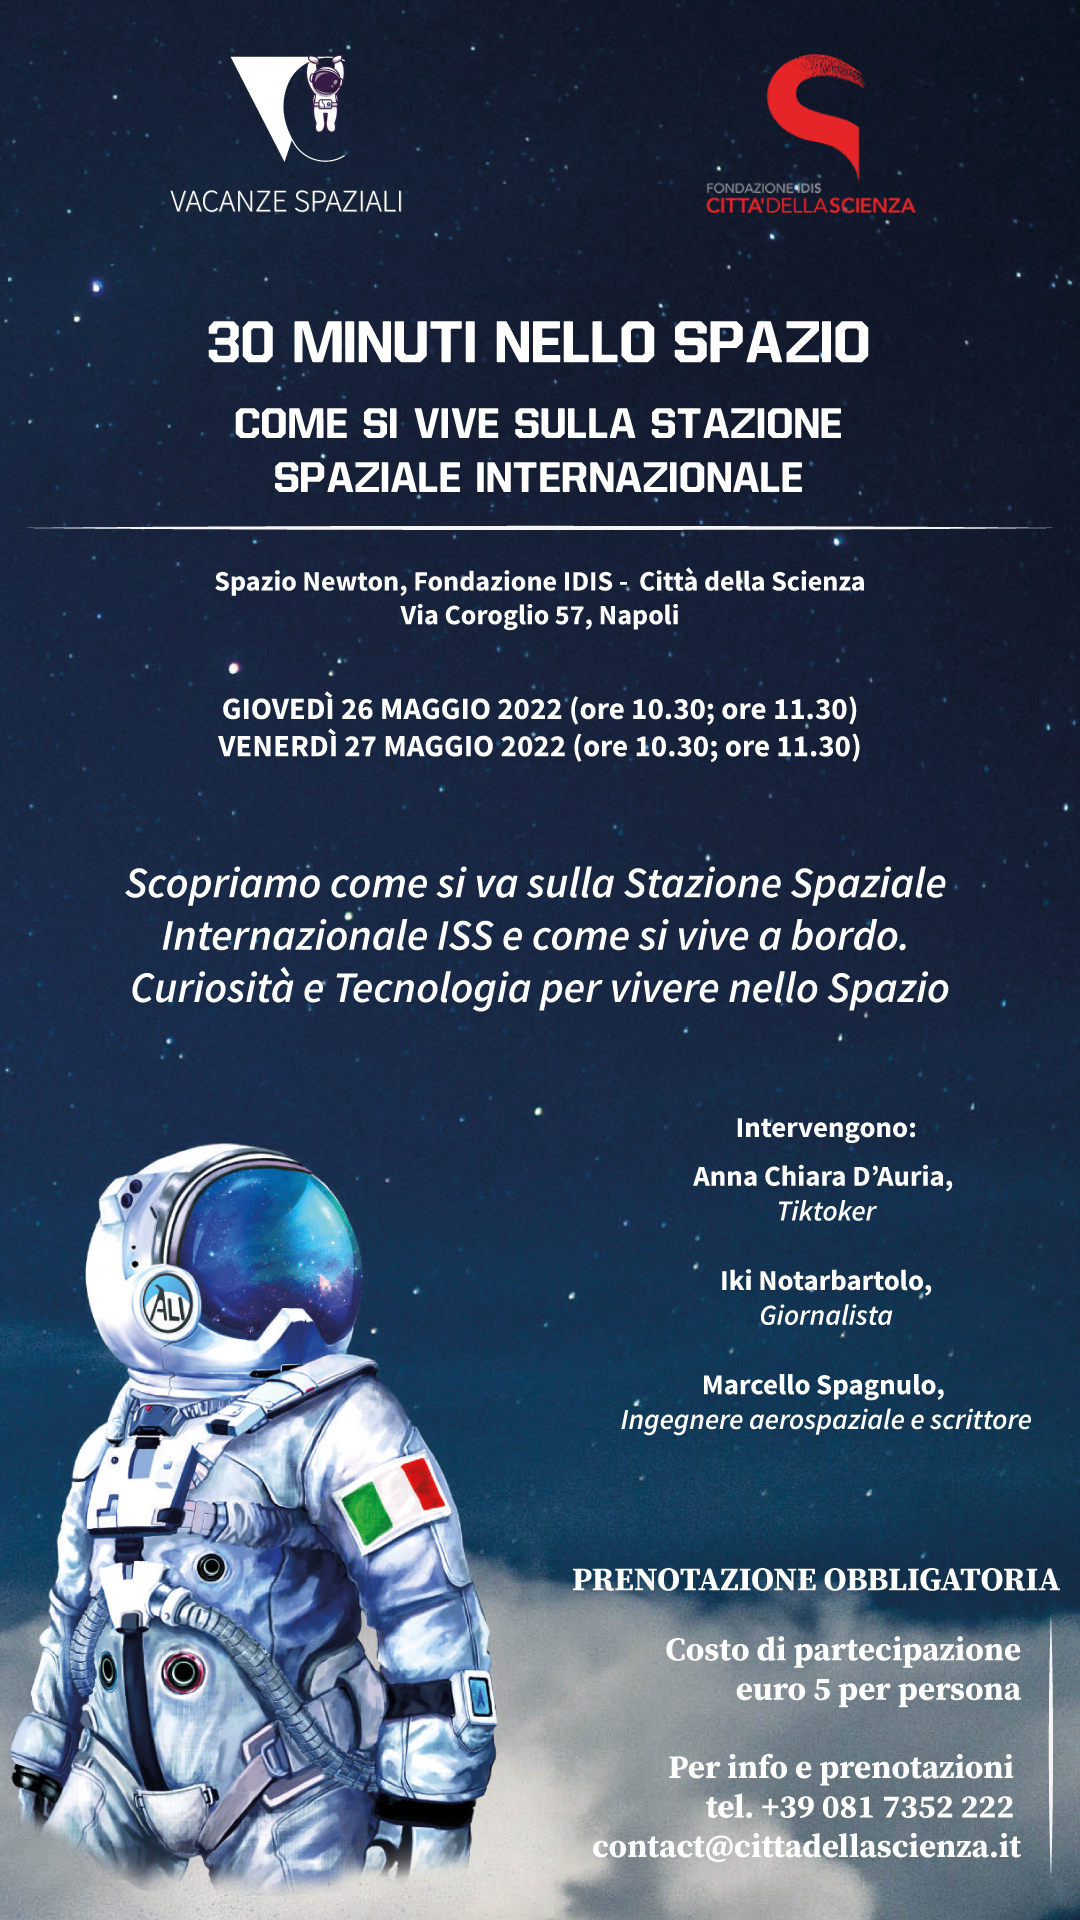 Mezz’ora nello spazio. Come si vive sulla stazione spaziale internazionale, vieni a scoprirlo a Città della Scienza il 26 e 27 maggio 2022.jpg